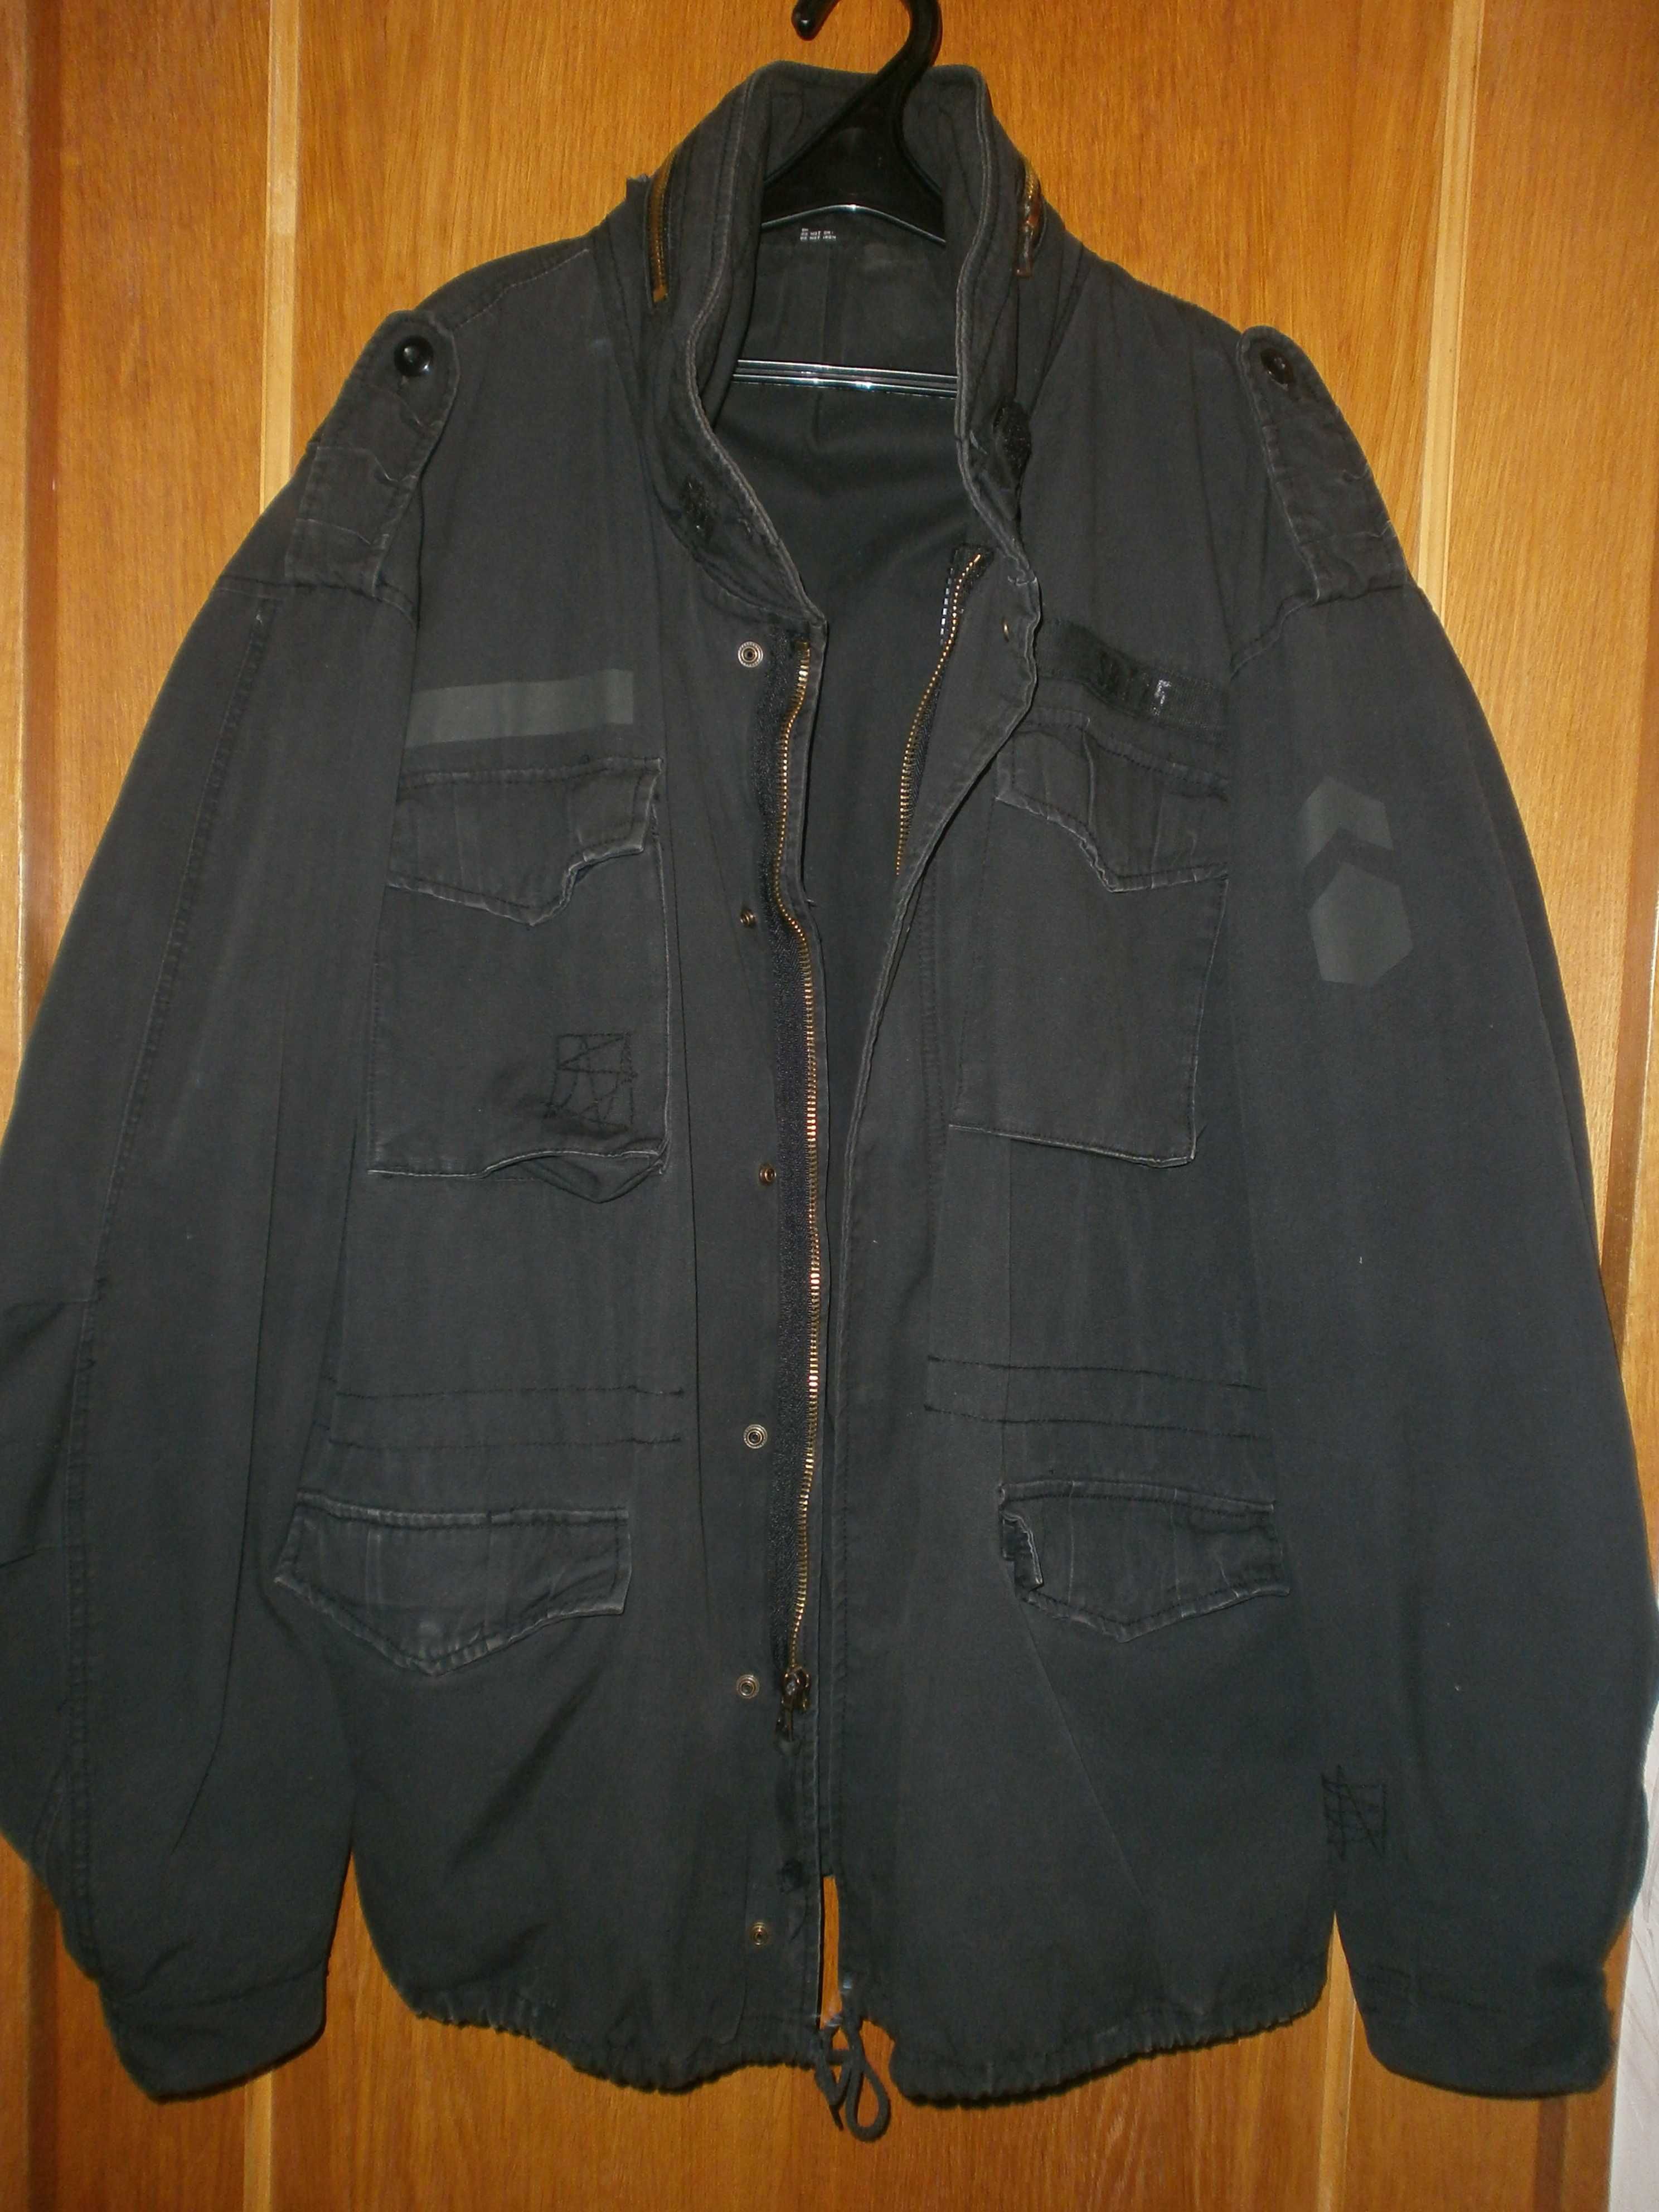 Куртка М65 Surplus ST&75, чёрная, разм. XXL, наш 60. ПОГ-72 см